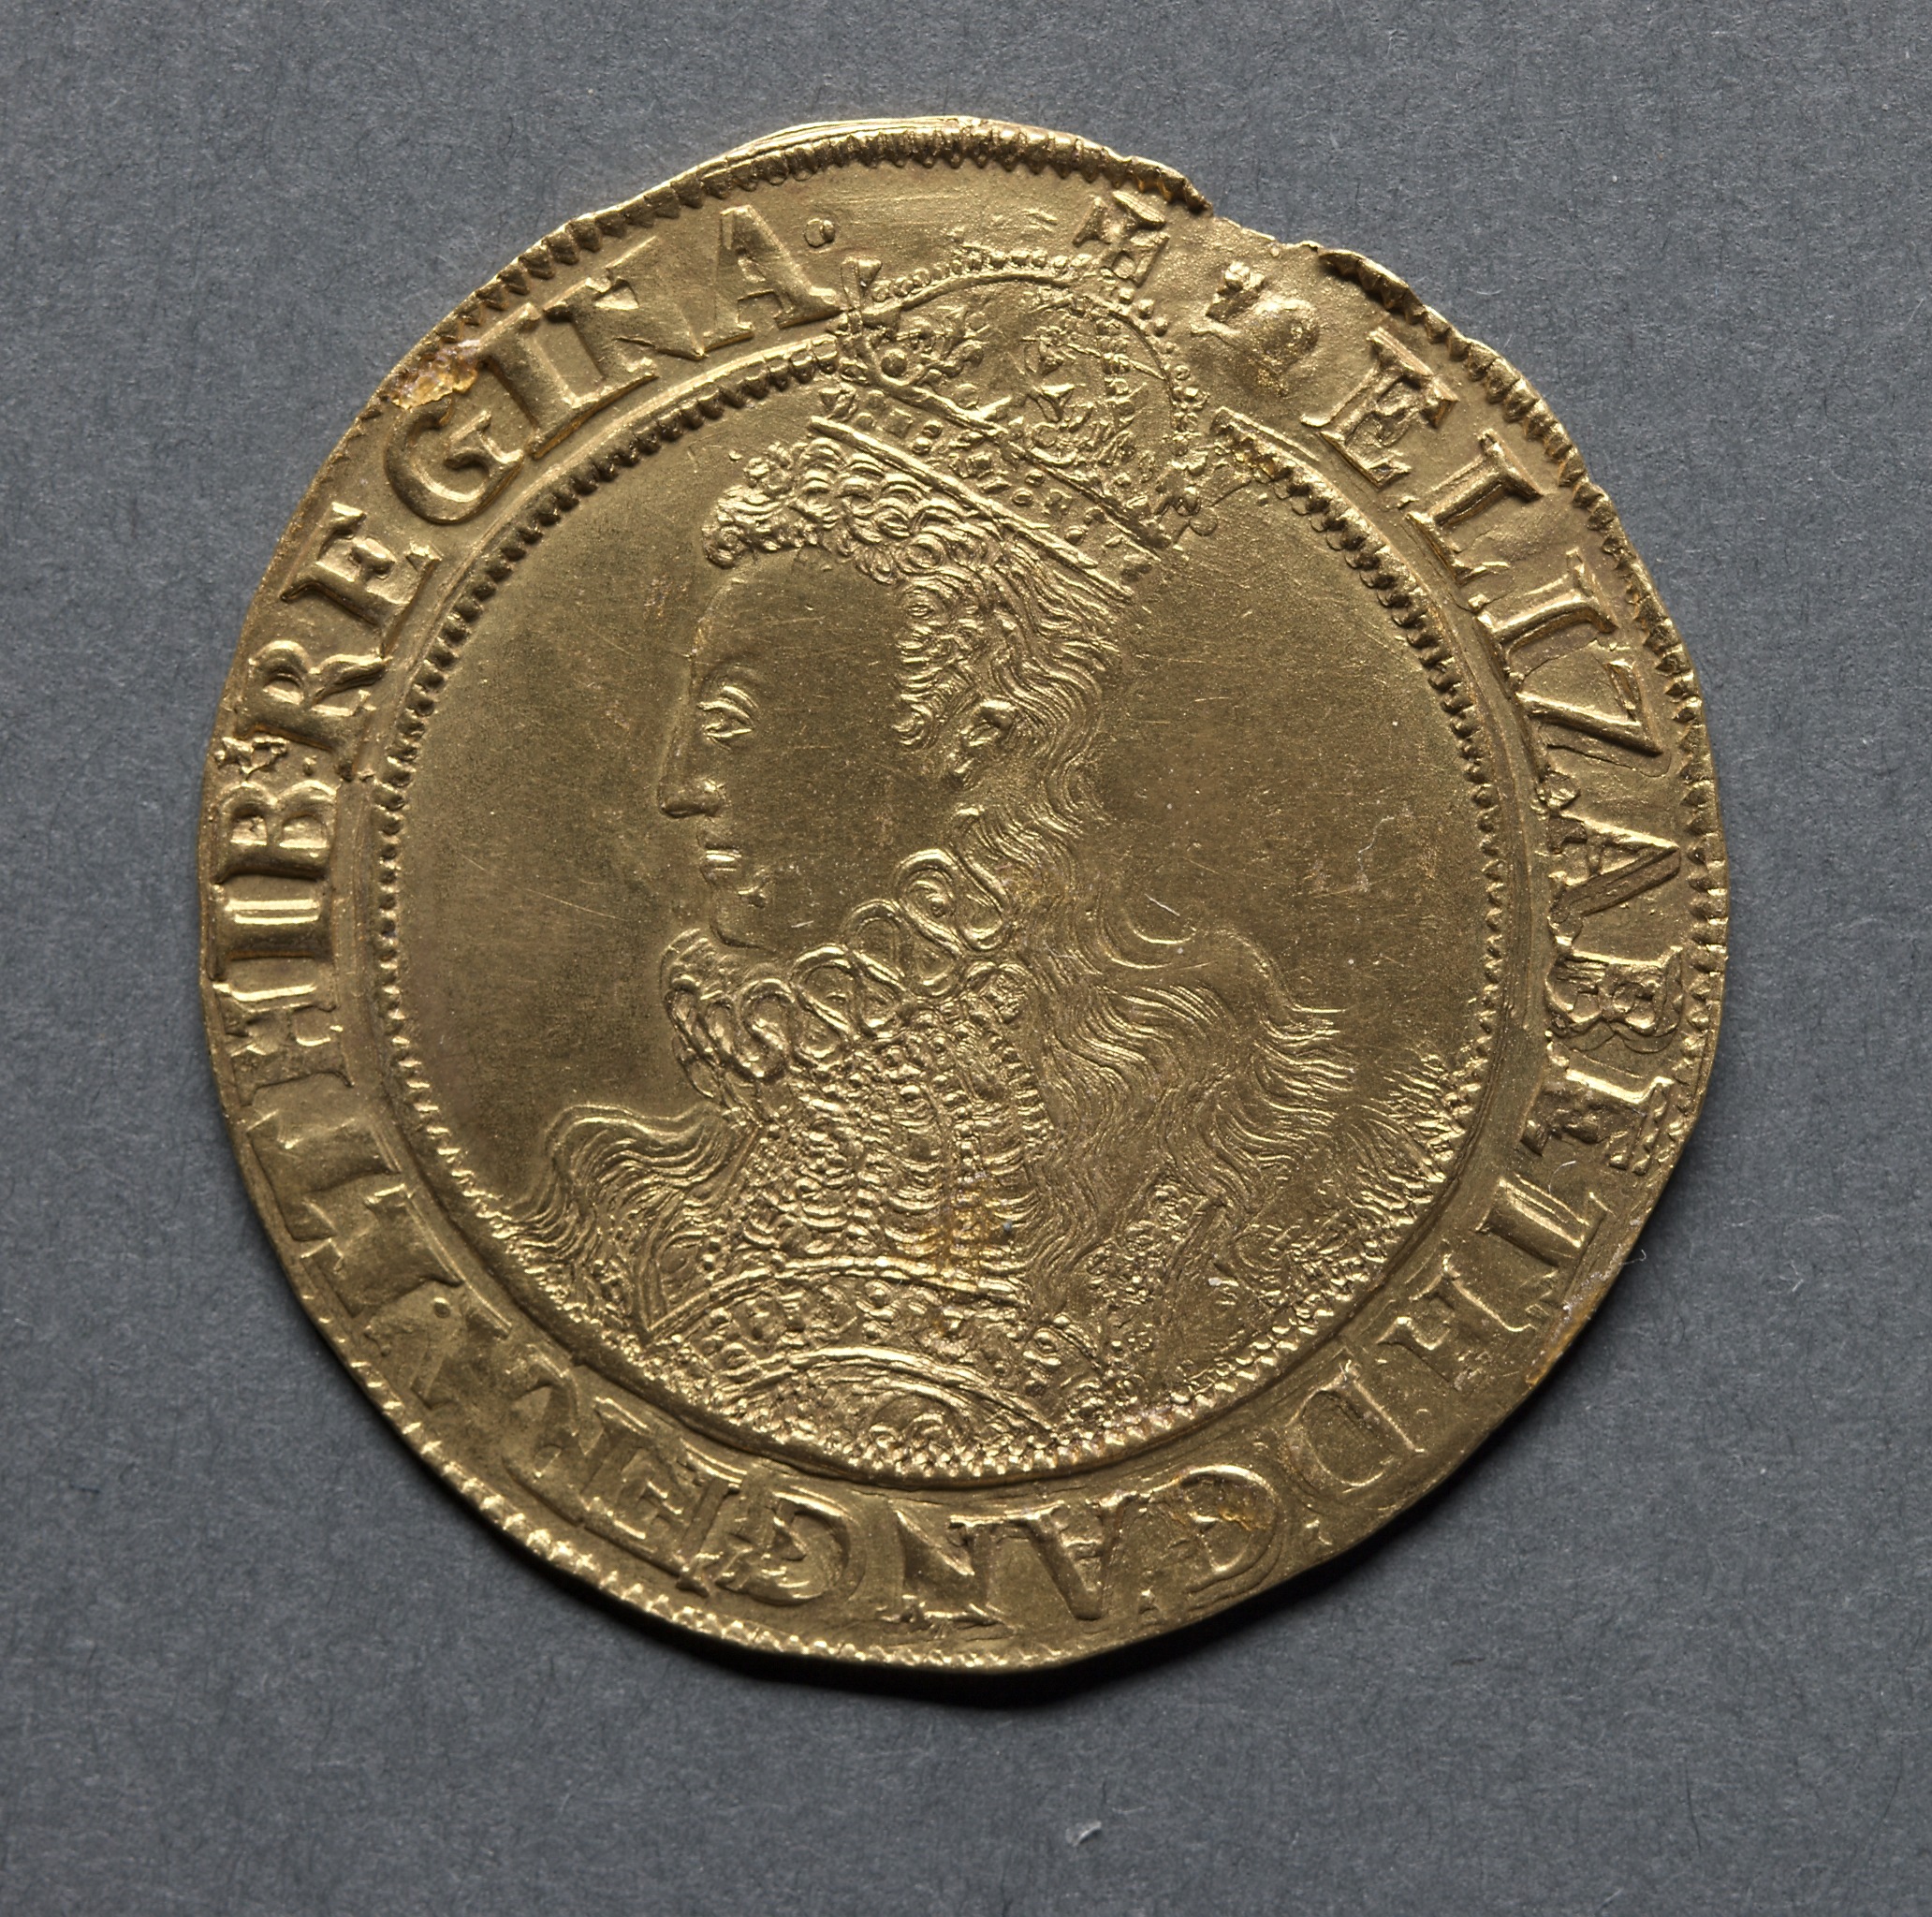 Pound: Elizabeth I (obverse)